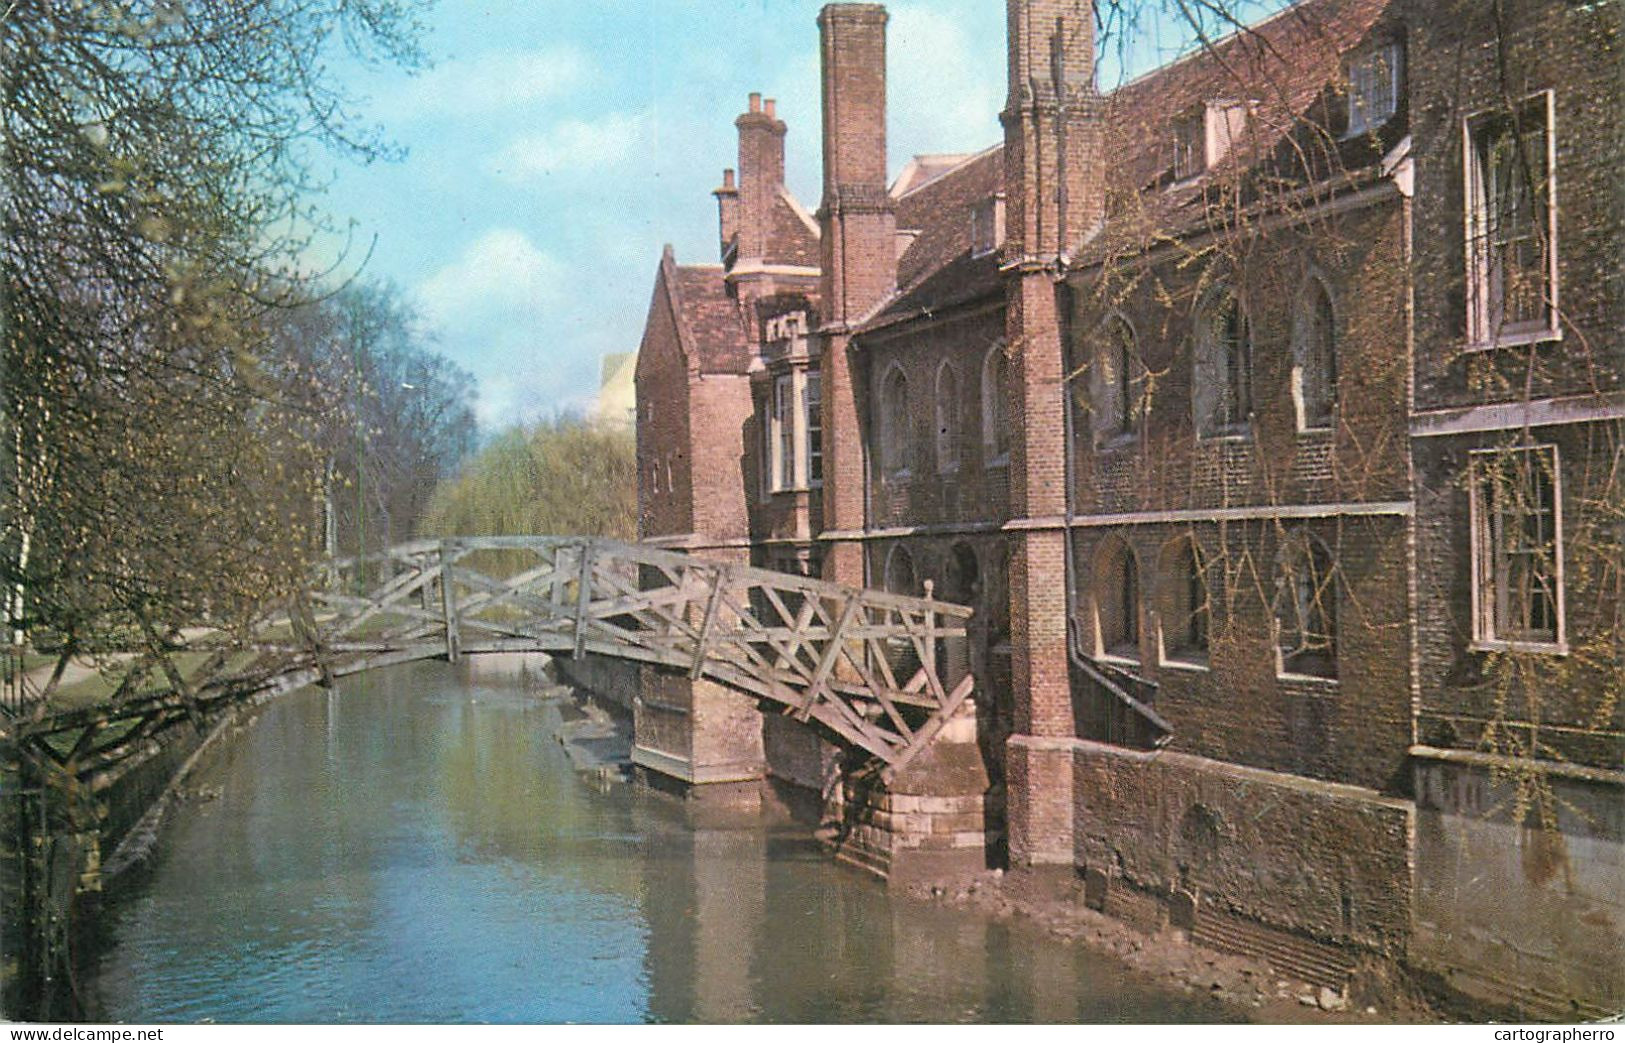 England Cambridge Queen's College Wooden Bridge - Cambridge